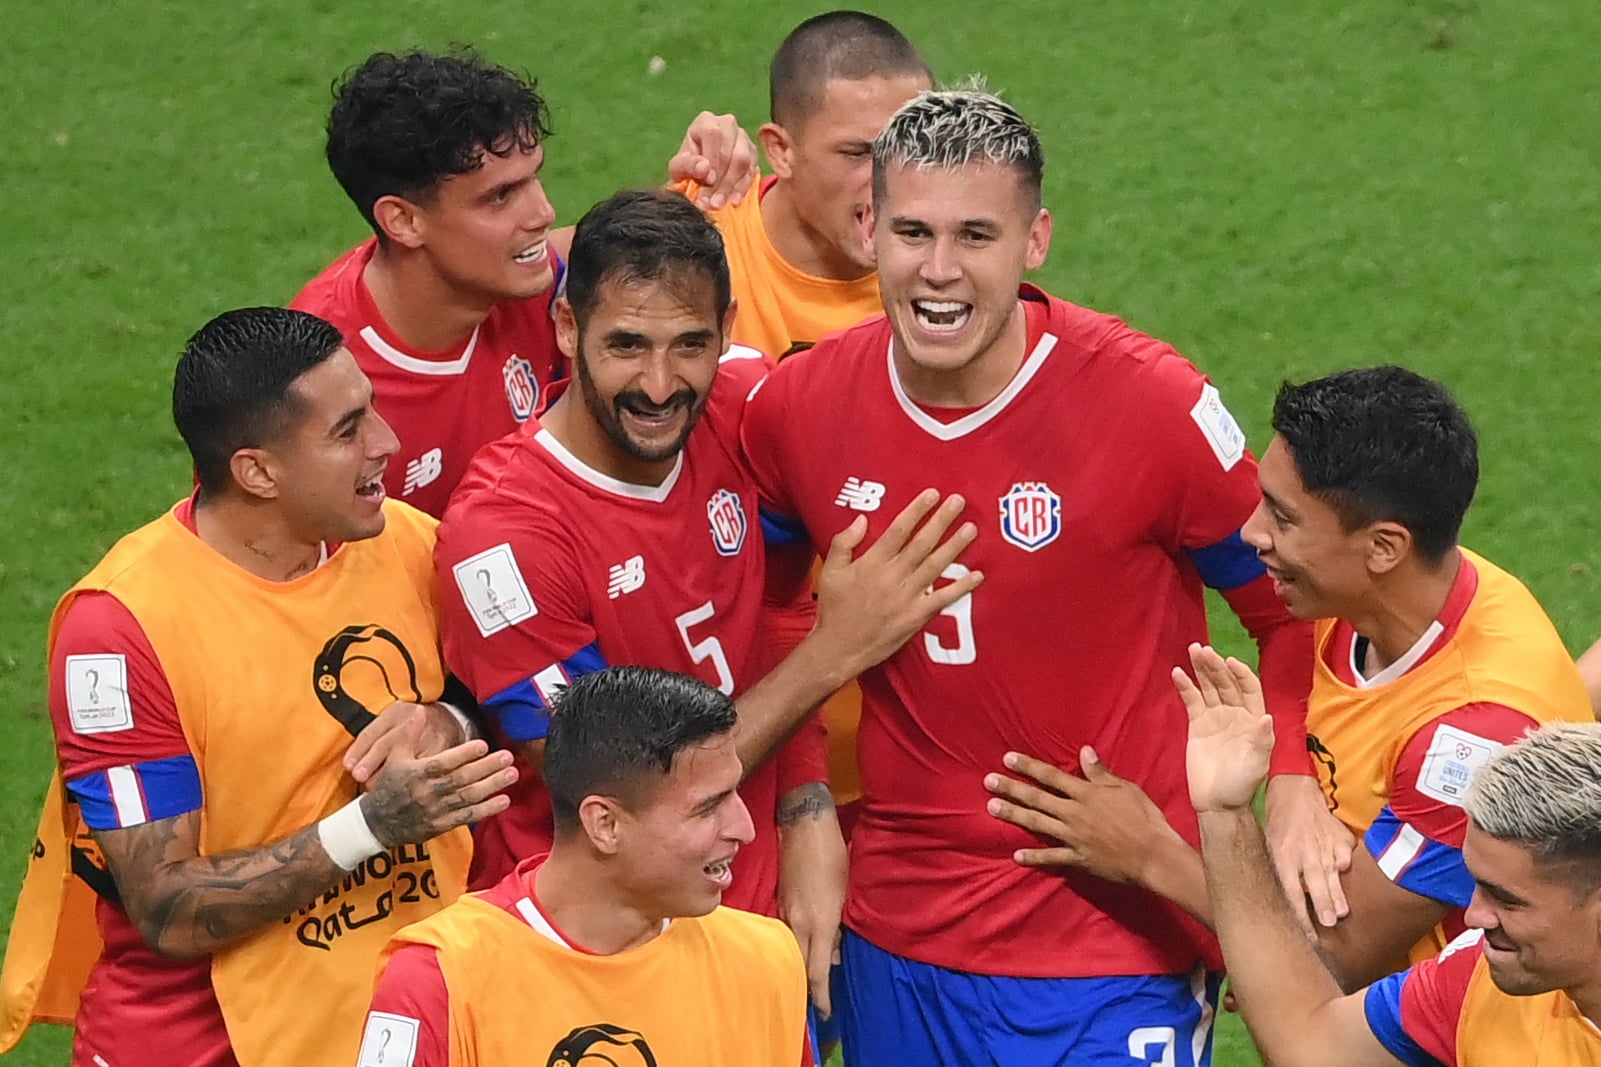 La ruta de Costa Rica: Concacaf definió la eliminatoria hacia el Mundial 2026